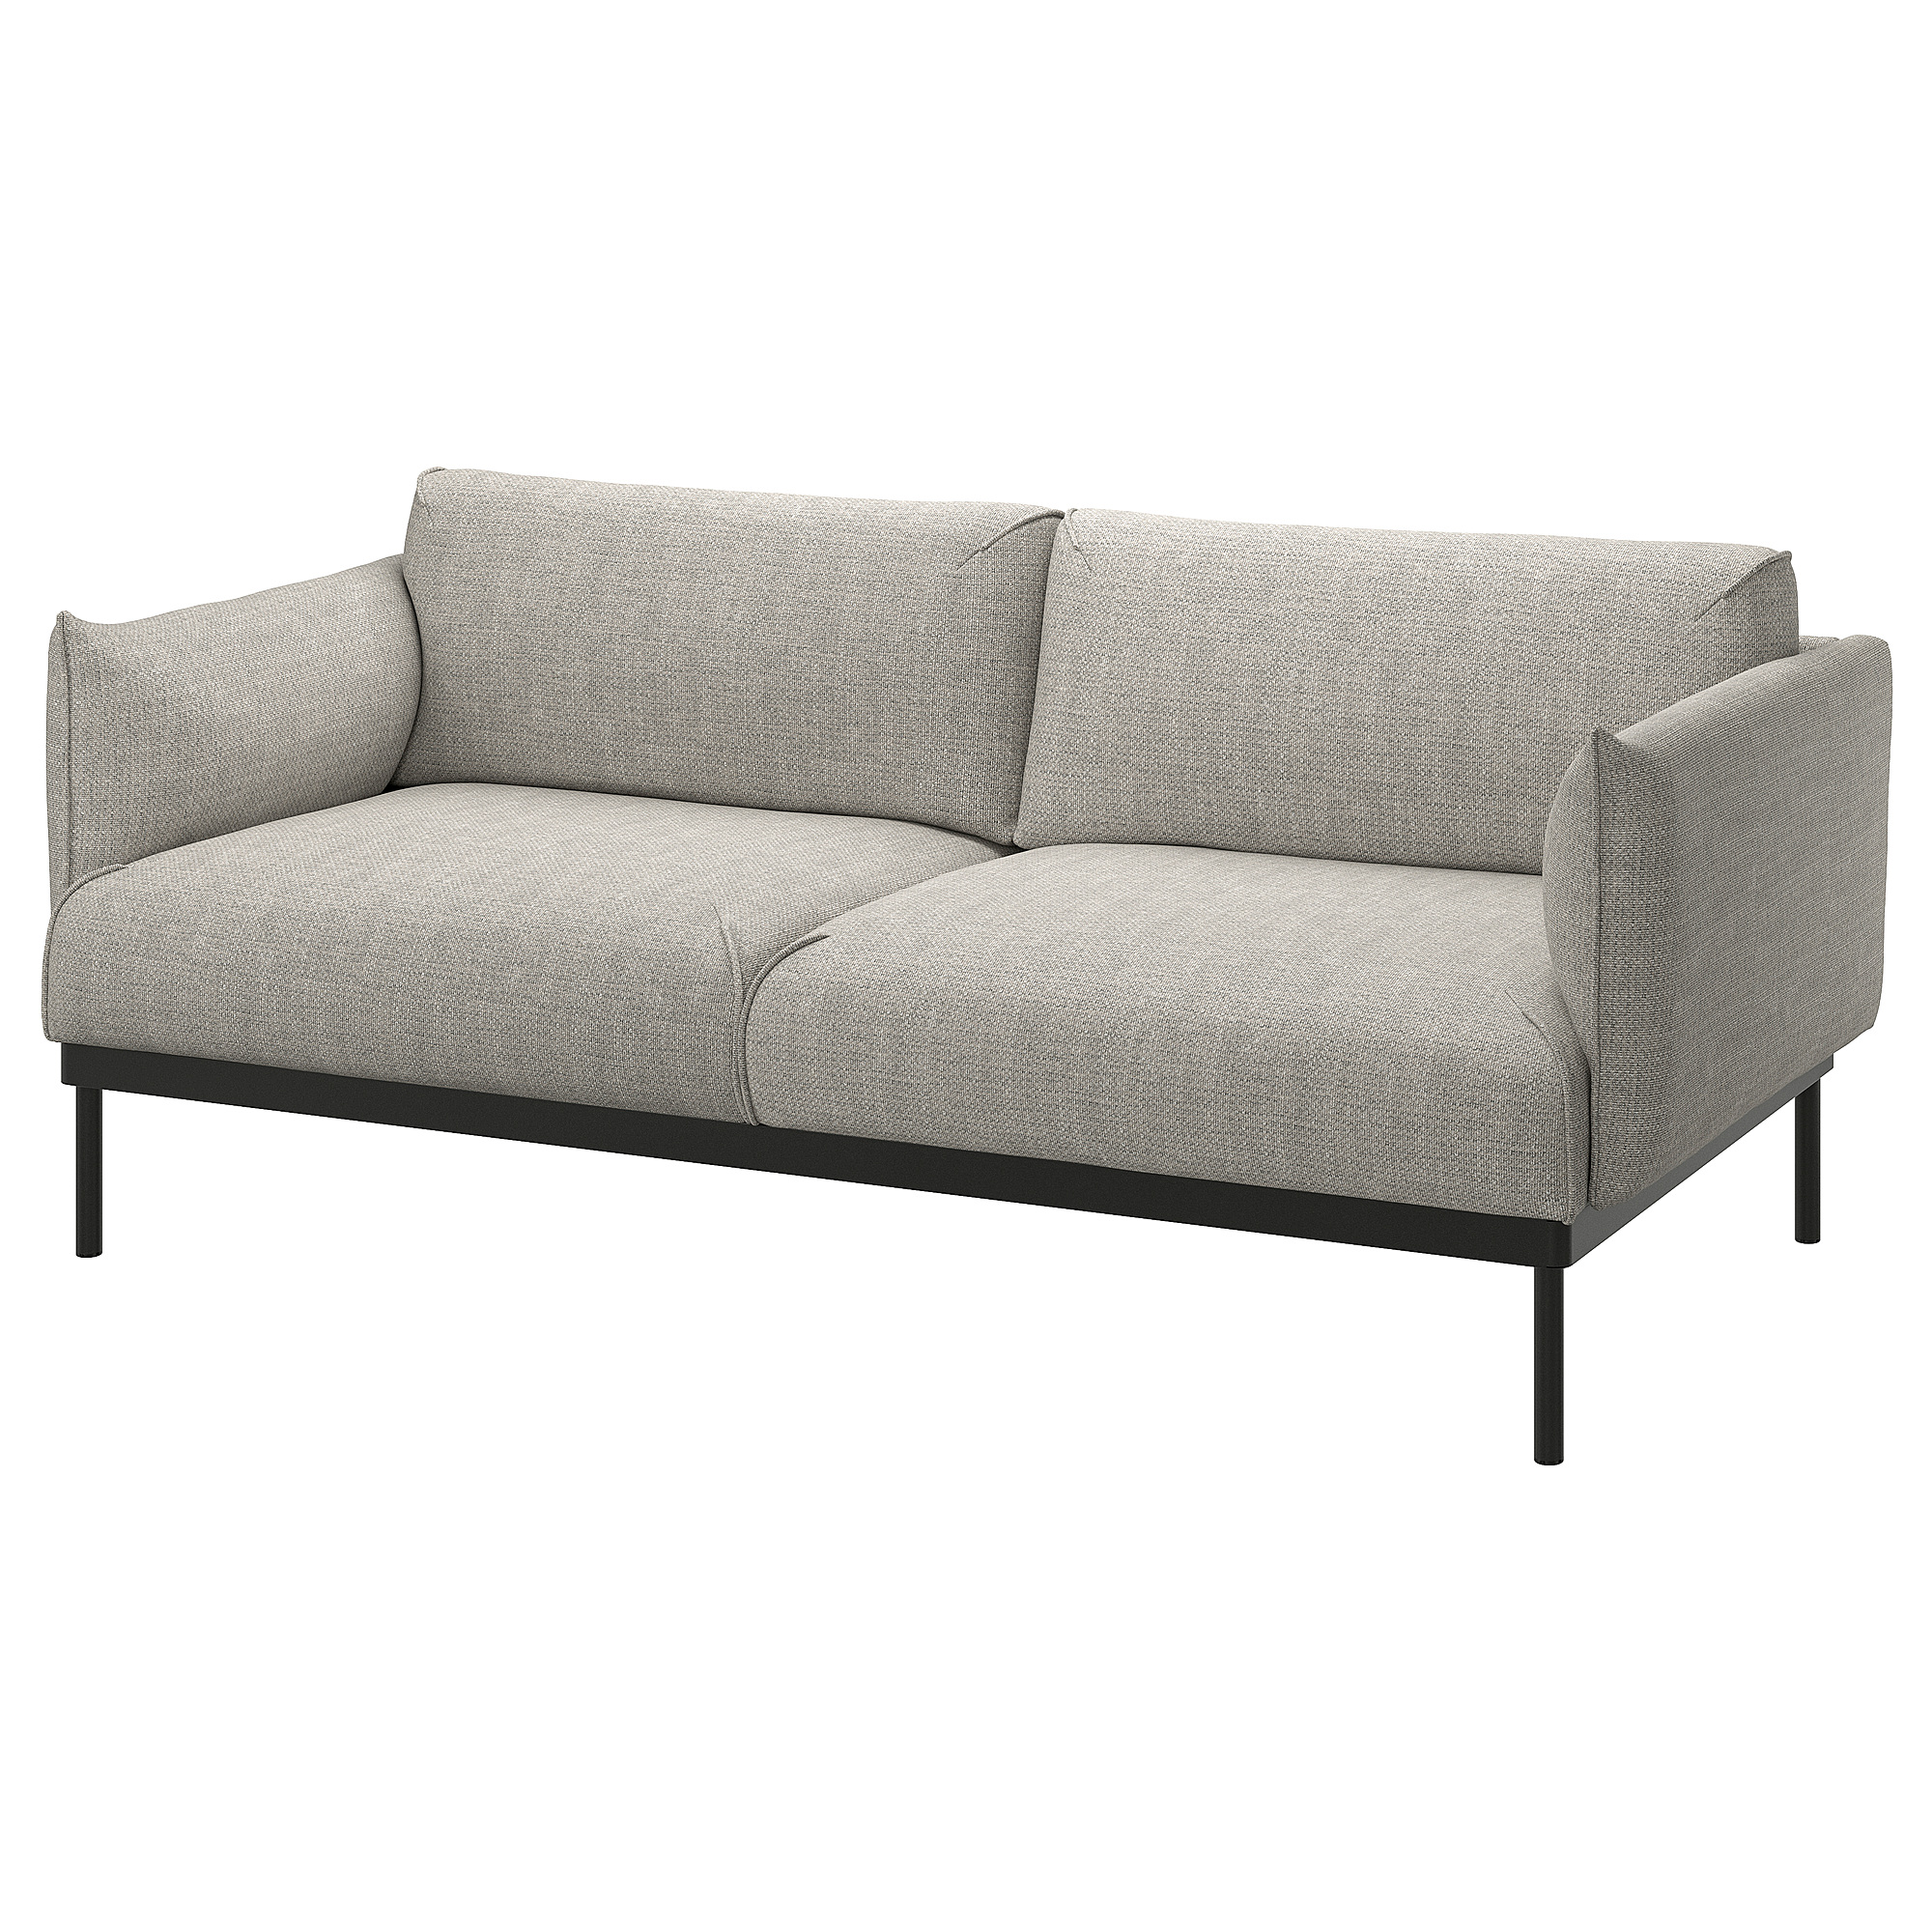 ÄPPLARYD 2-seat sofa